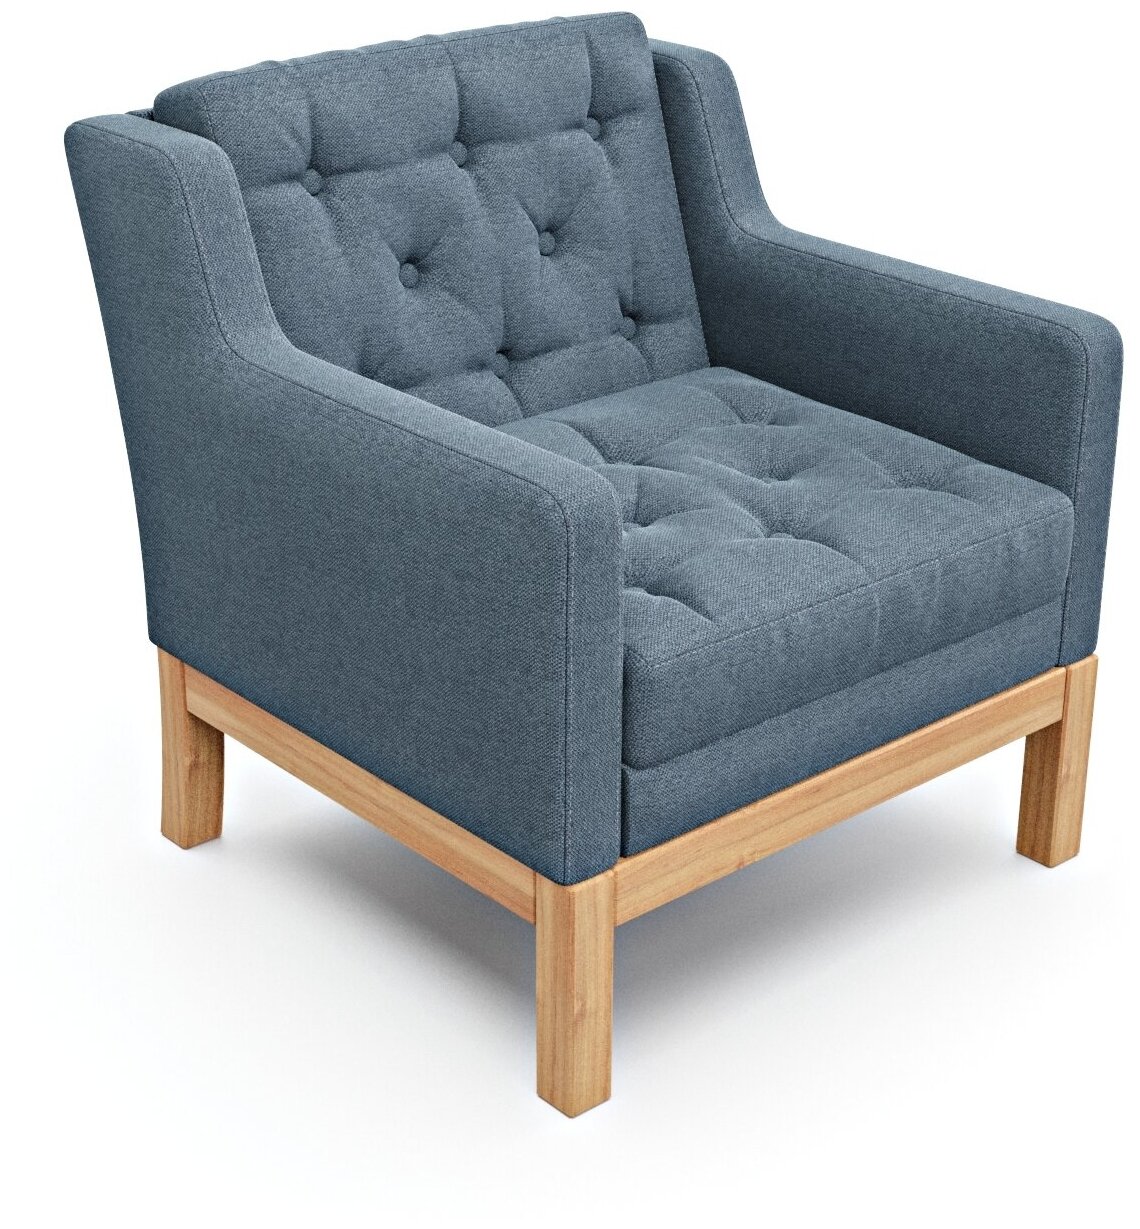 Дизайнерское мягкое кресло Soft Element Нептун, на деревянных ножках, рогожка, сине-серый, современный стиль скандинавский лофт, в гостиную, офис